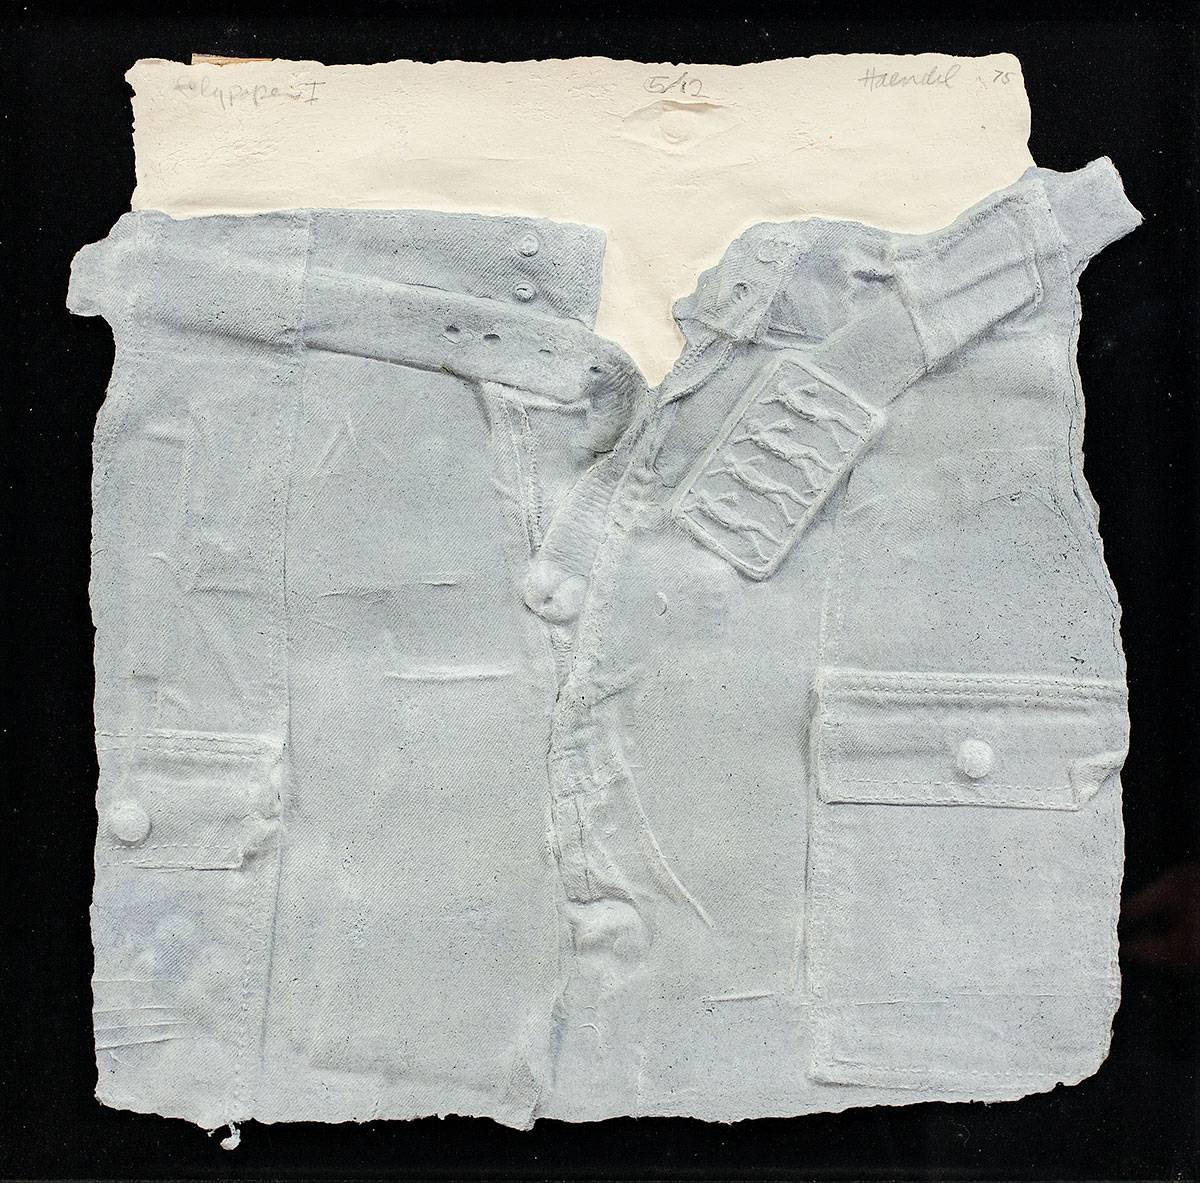 William Haendel Figurative Sculpture - Bill Haendel Cast Paper Relief Sculpture Blue jeans 1975